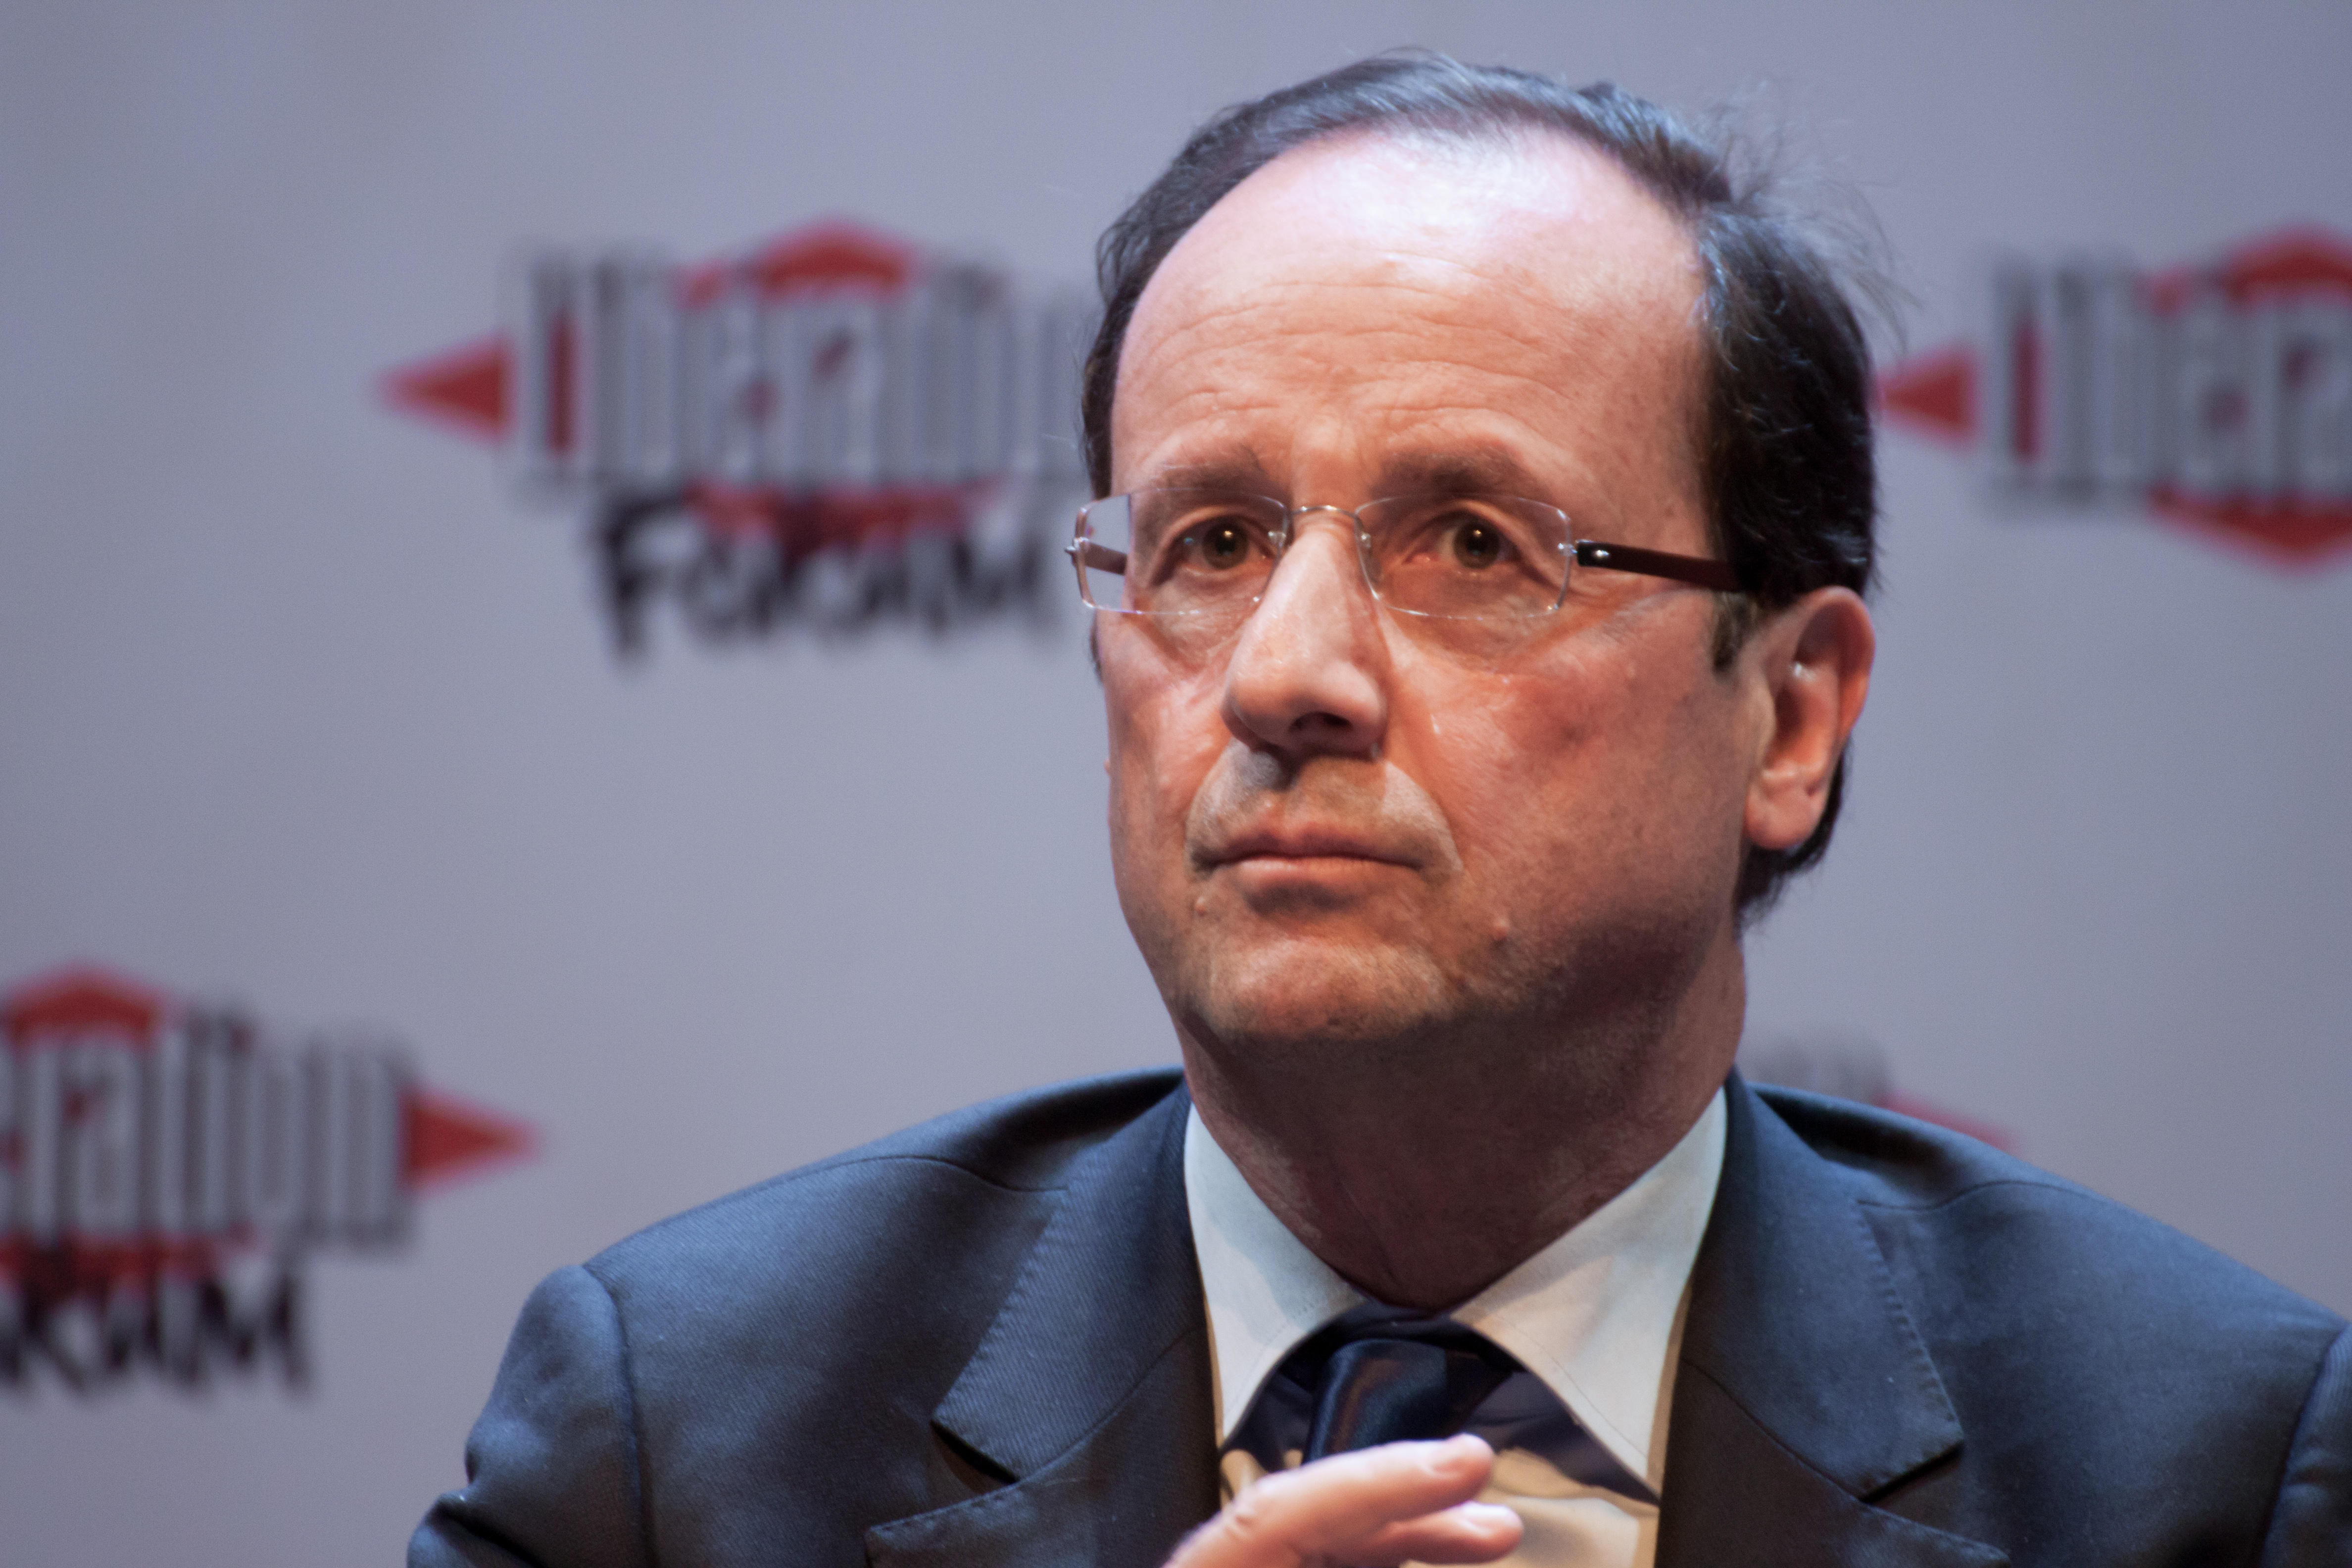 Párizsi vérengzés - Hollande: nem ért véget a fenyegetettség Franciaországban